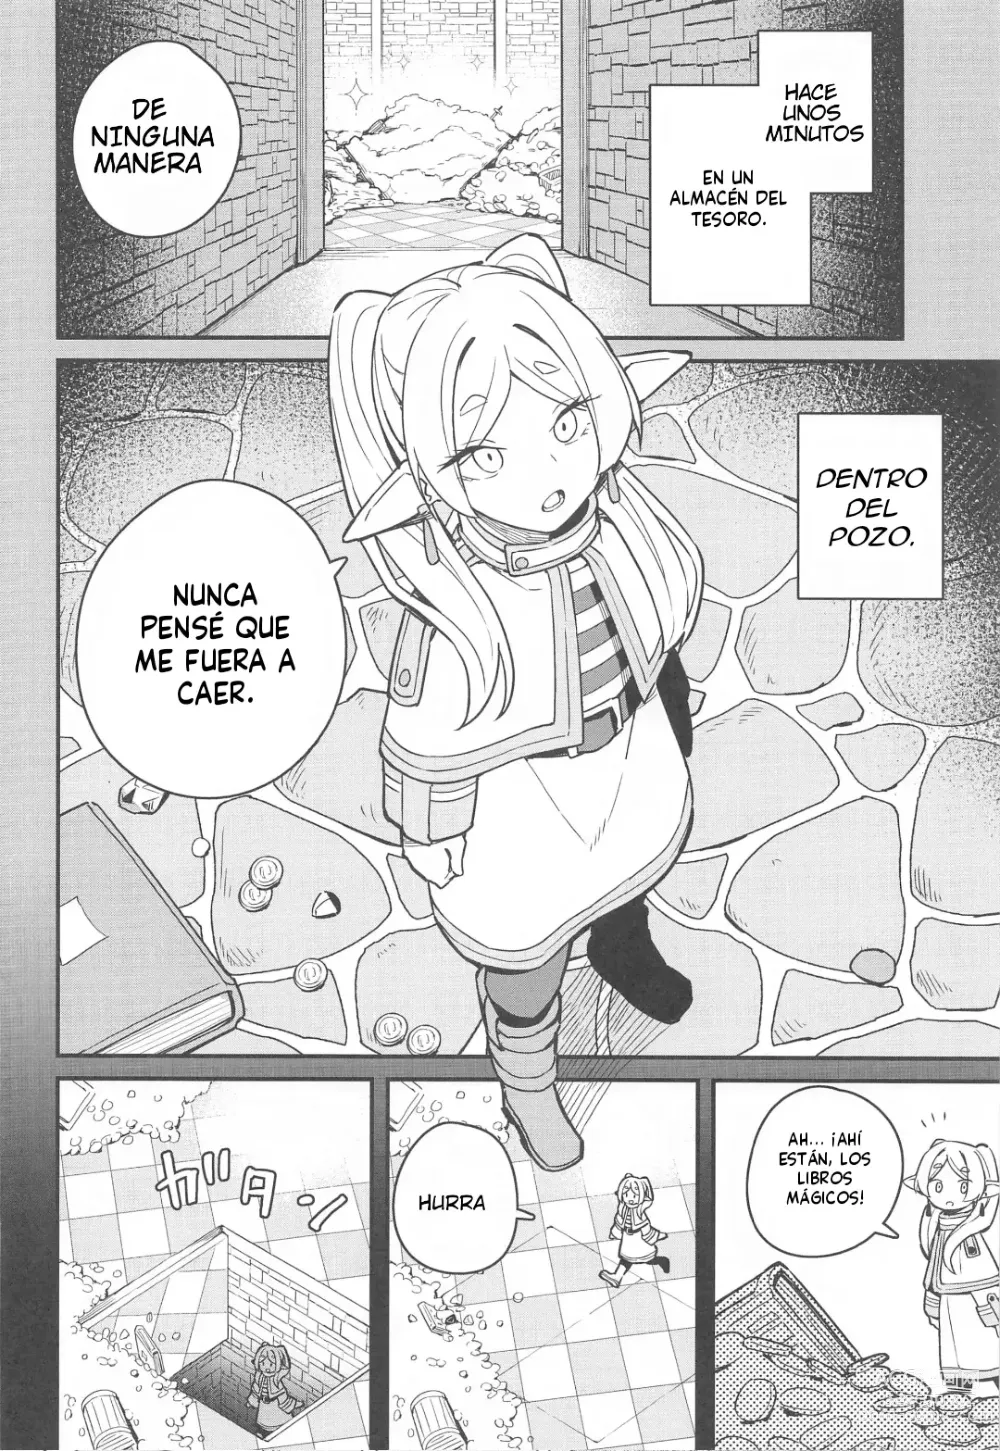 Page 3 of doujinshi Escape Del Pozo. ¡la Última Aventura!